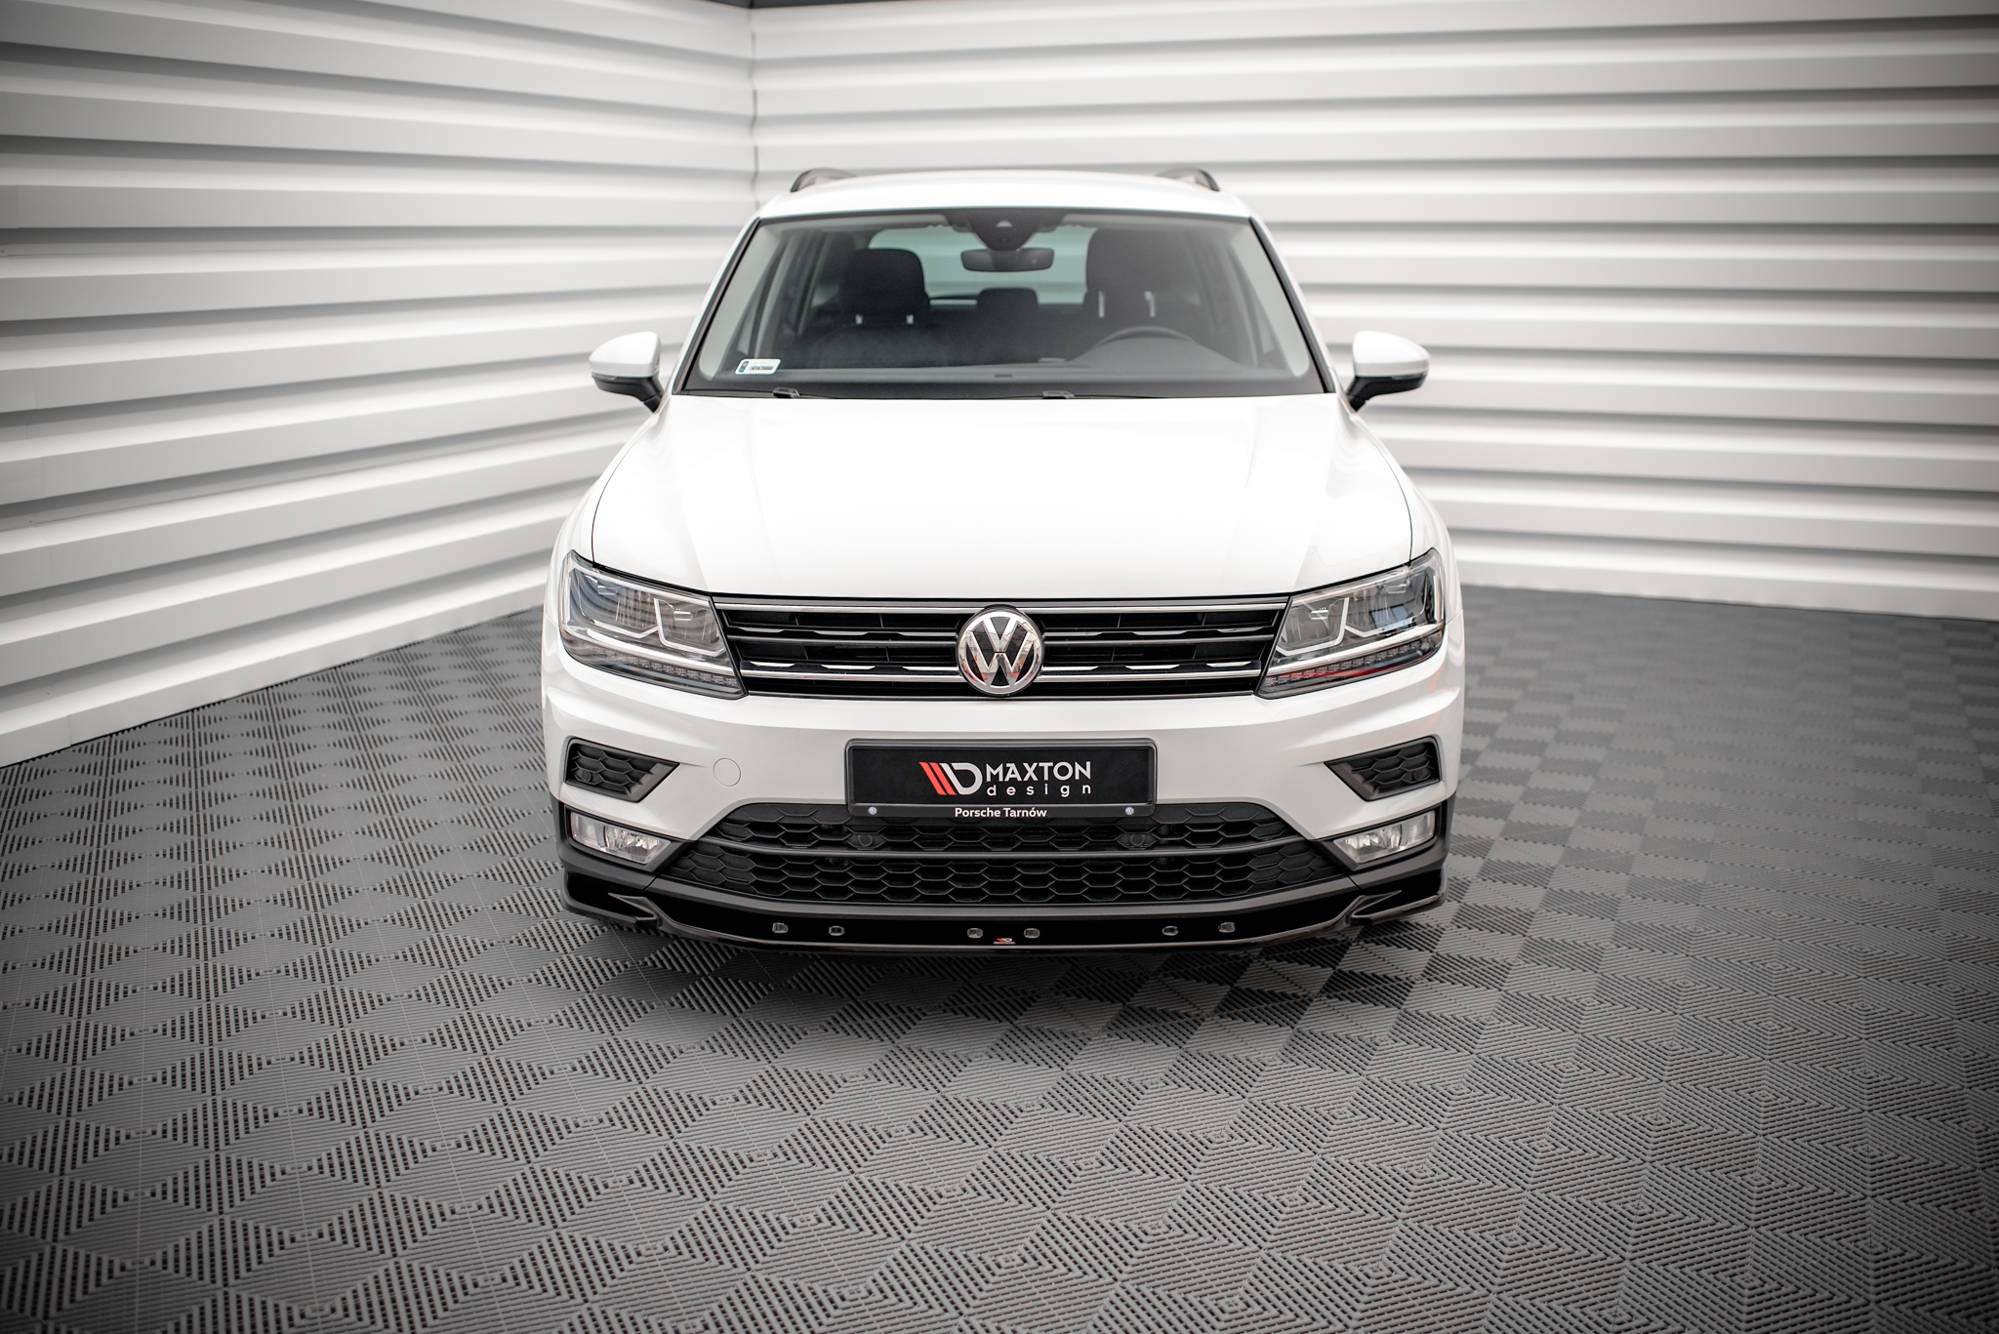 Front Ansatz V.3 Für Volkswagen Tiguan R / R-Line Mk2 Facelift